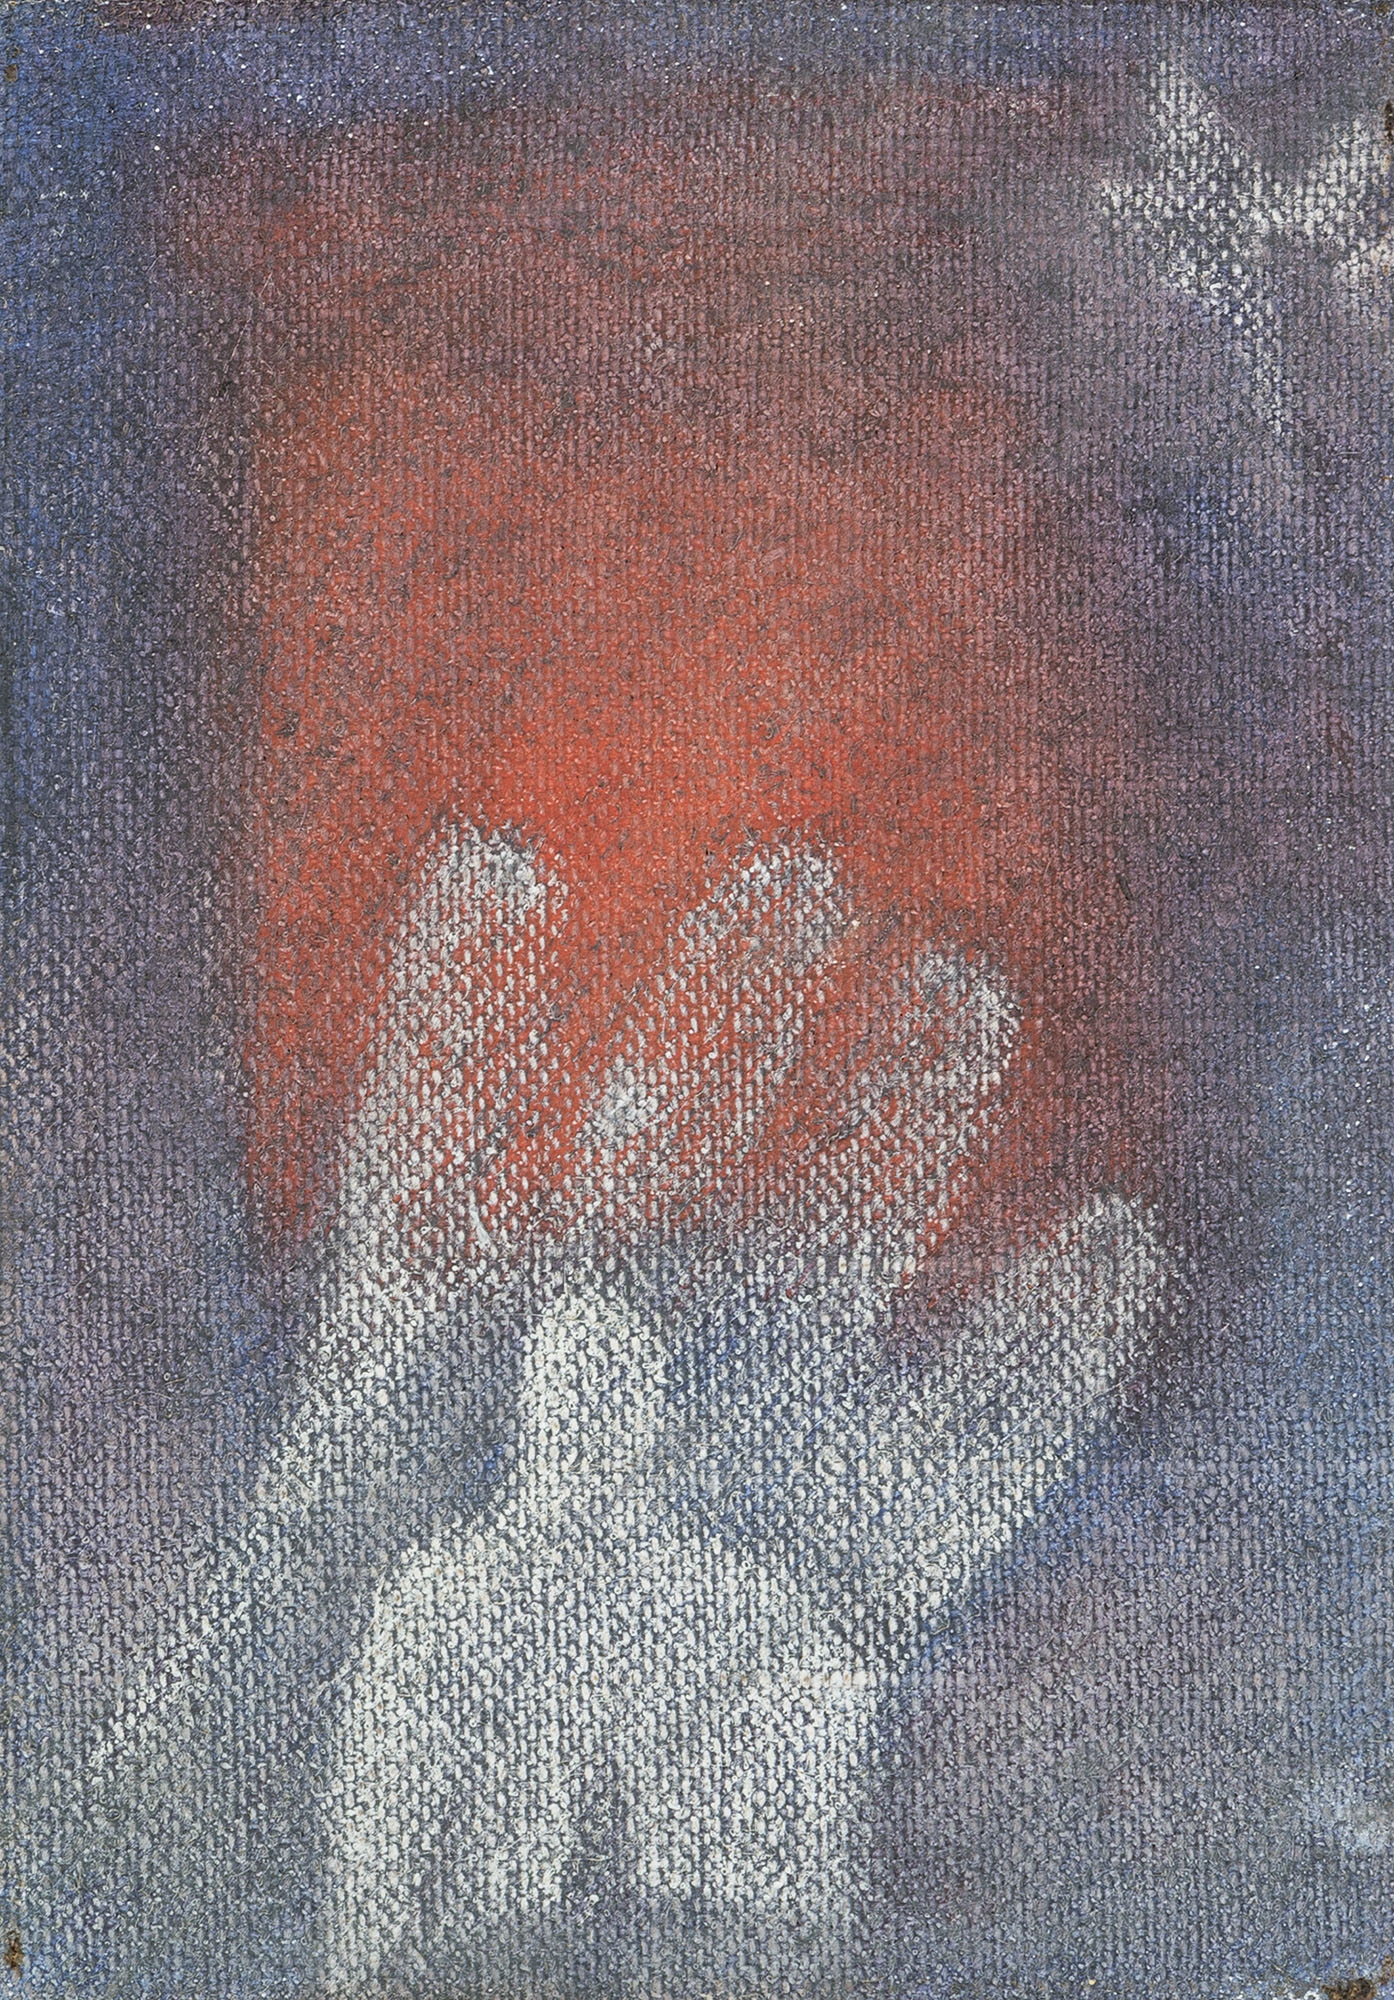 Impronta di mano e segno di cuore by Stefano Torelli, 1993